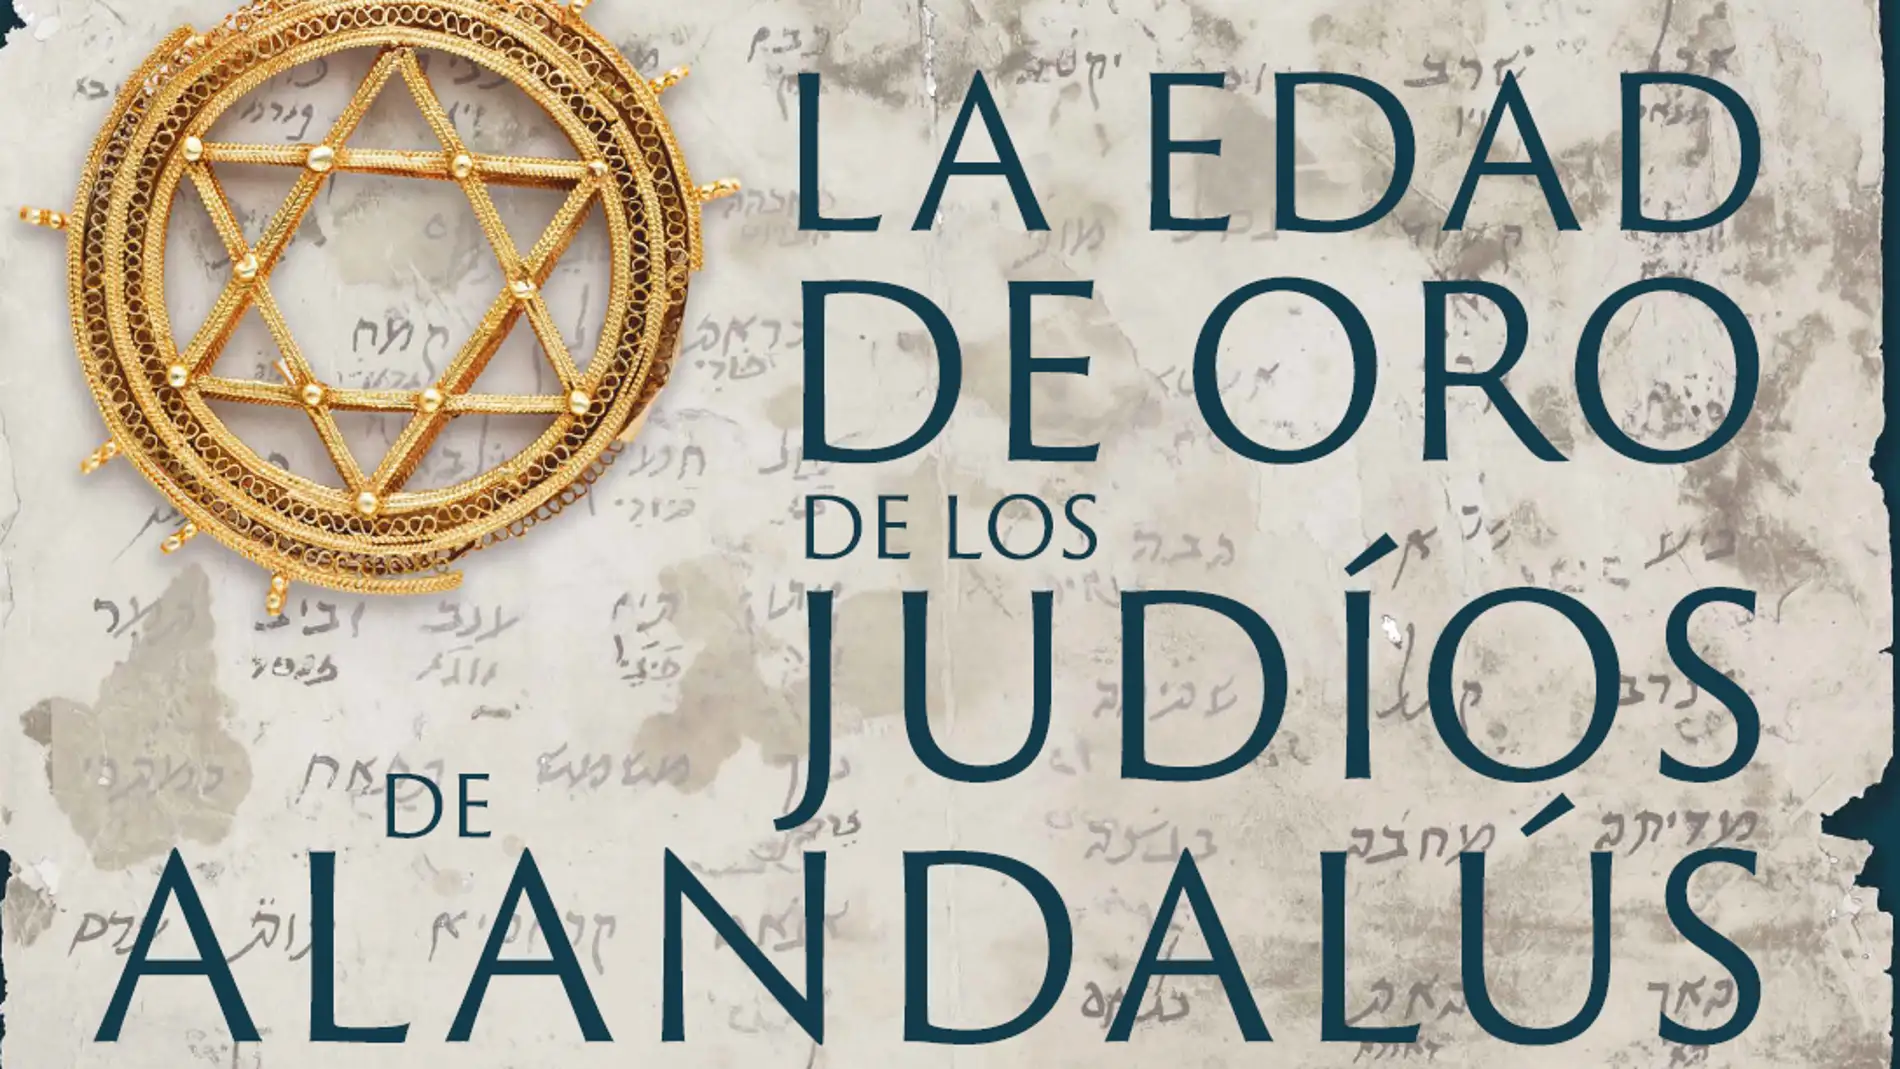 ‘La edad de oro de los judíos de Al-Ándalus’ una exposición de la mano de la Red de Juderías de España